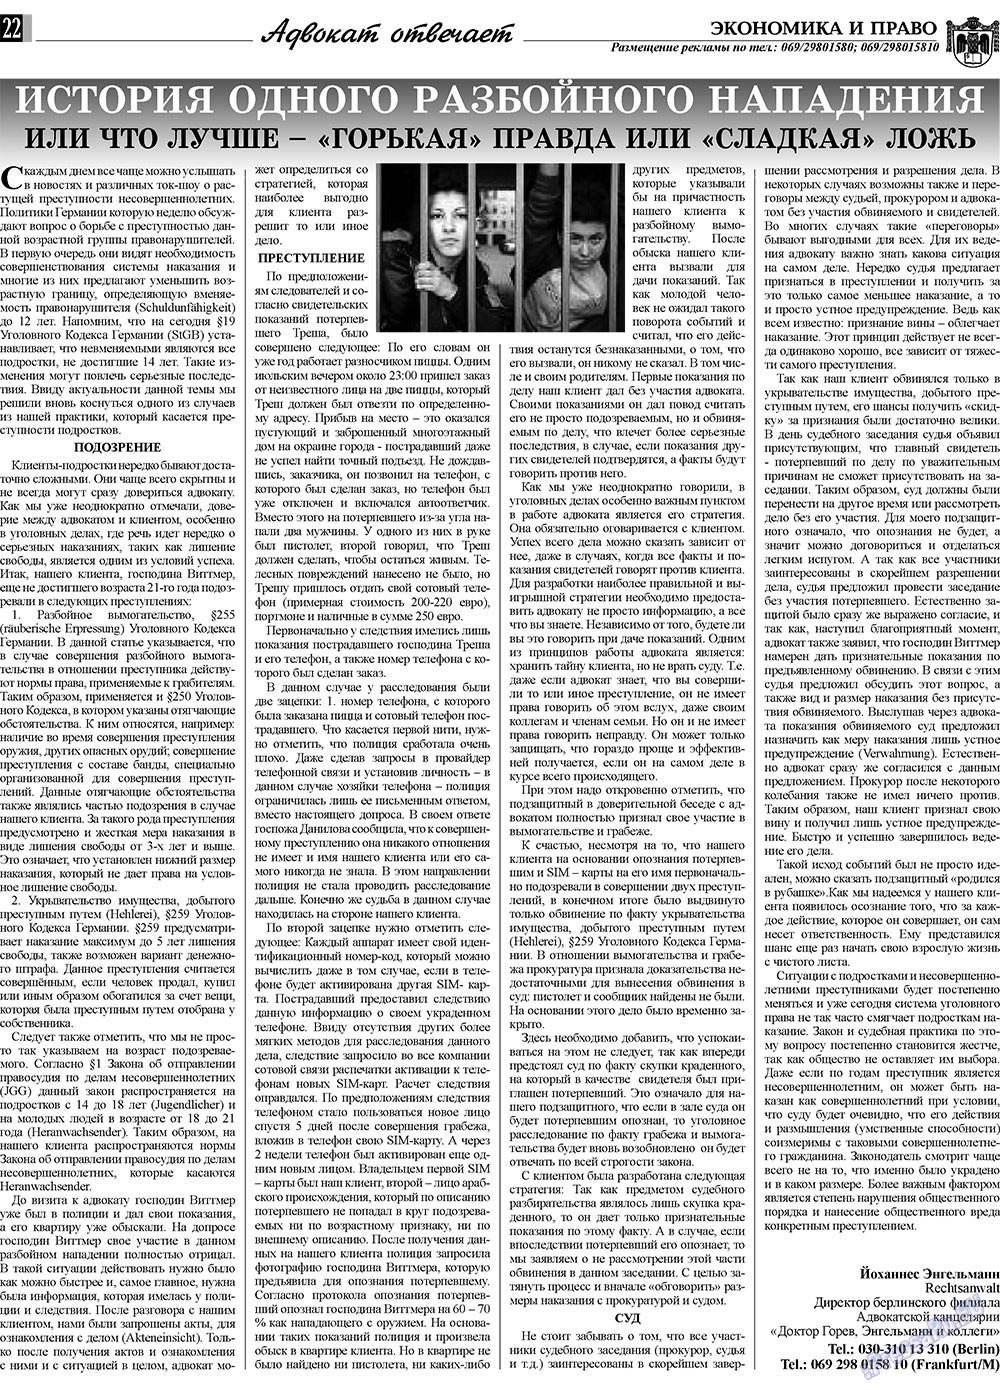 Экономика и право, газета. 2010 №2 стр.22